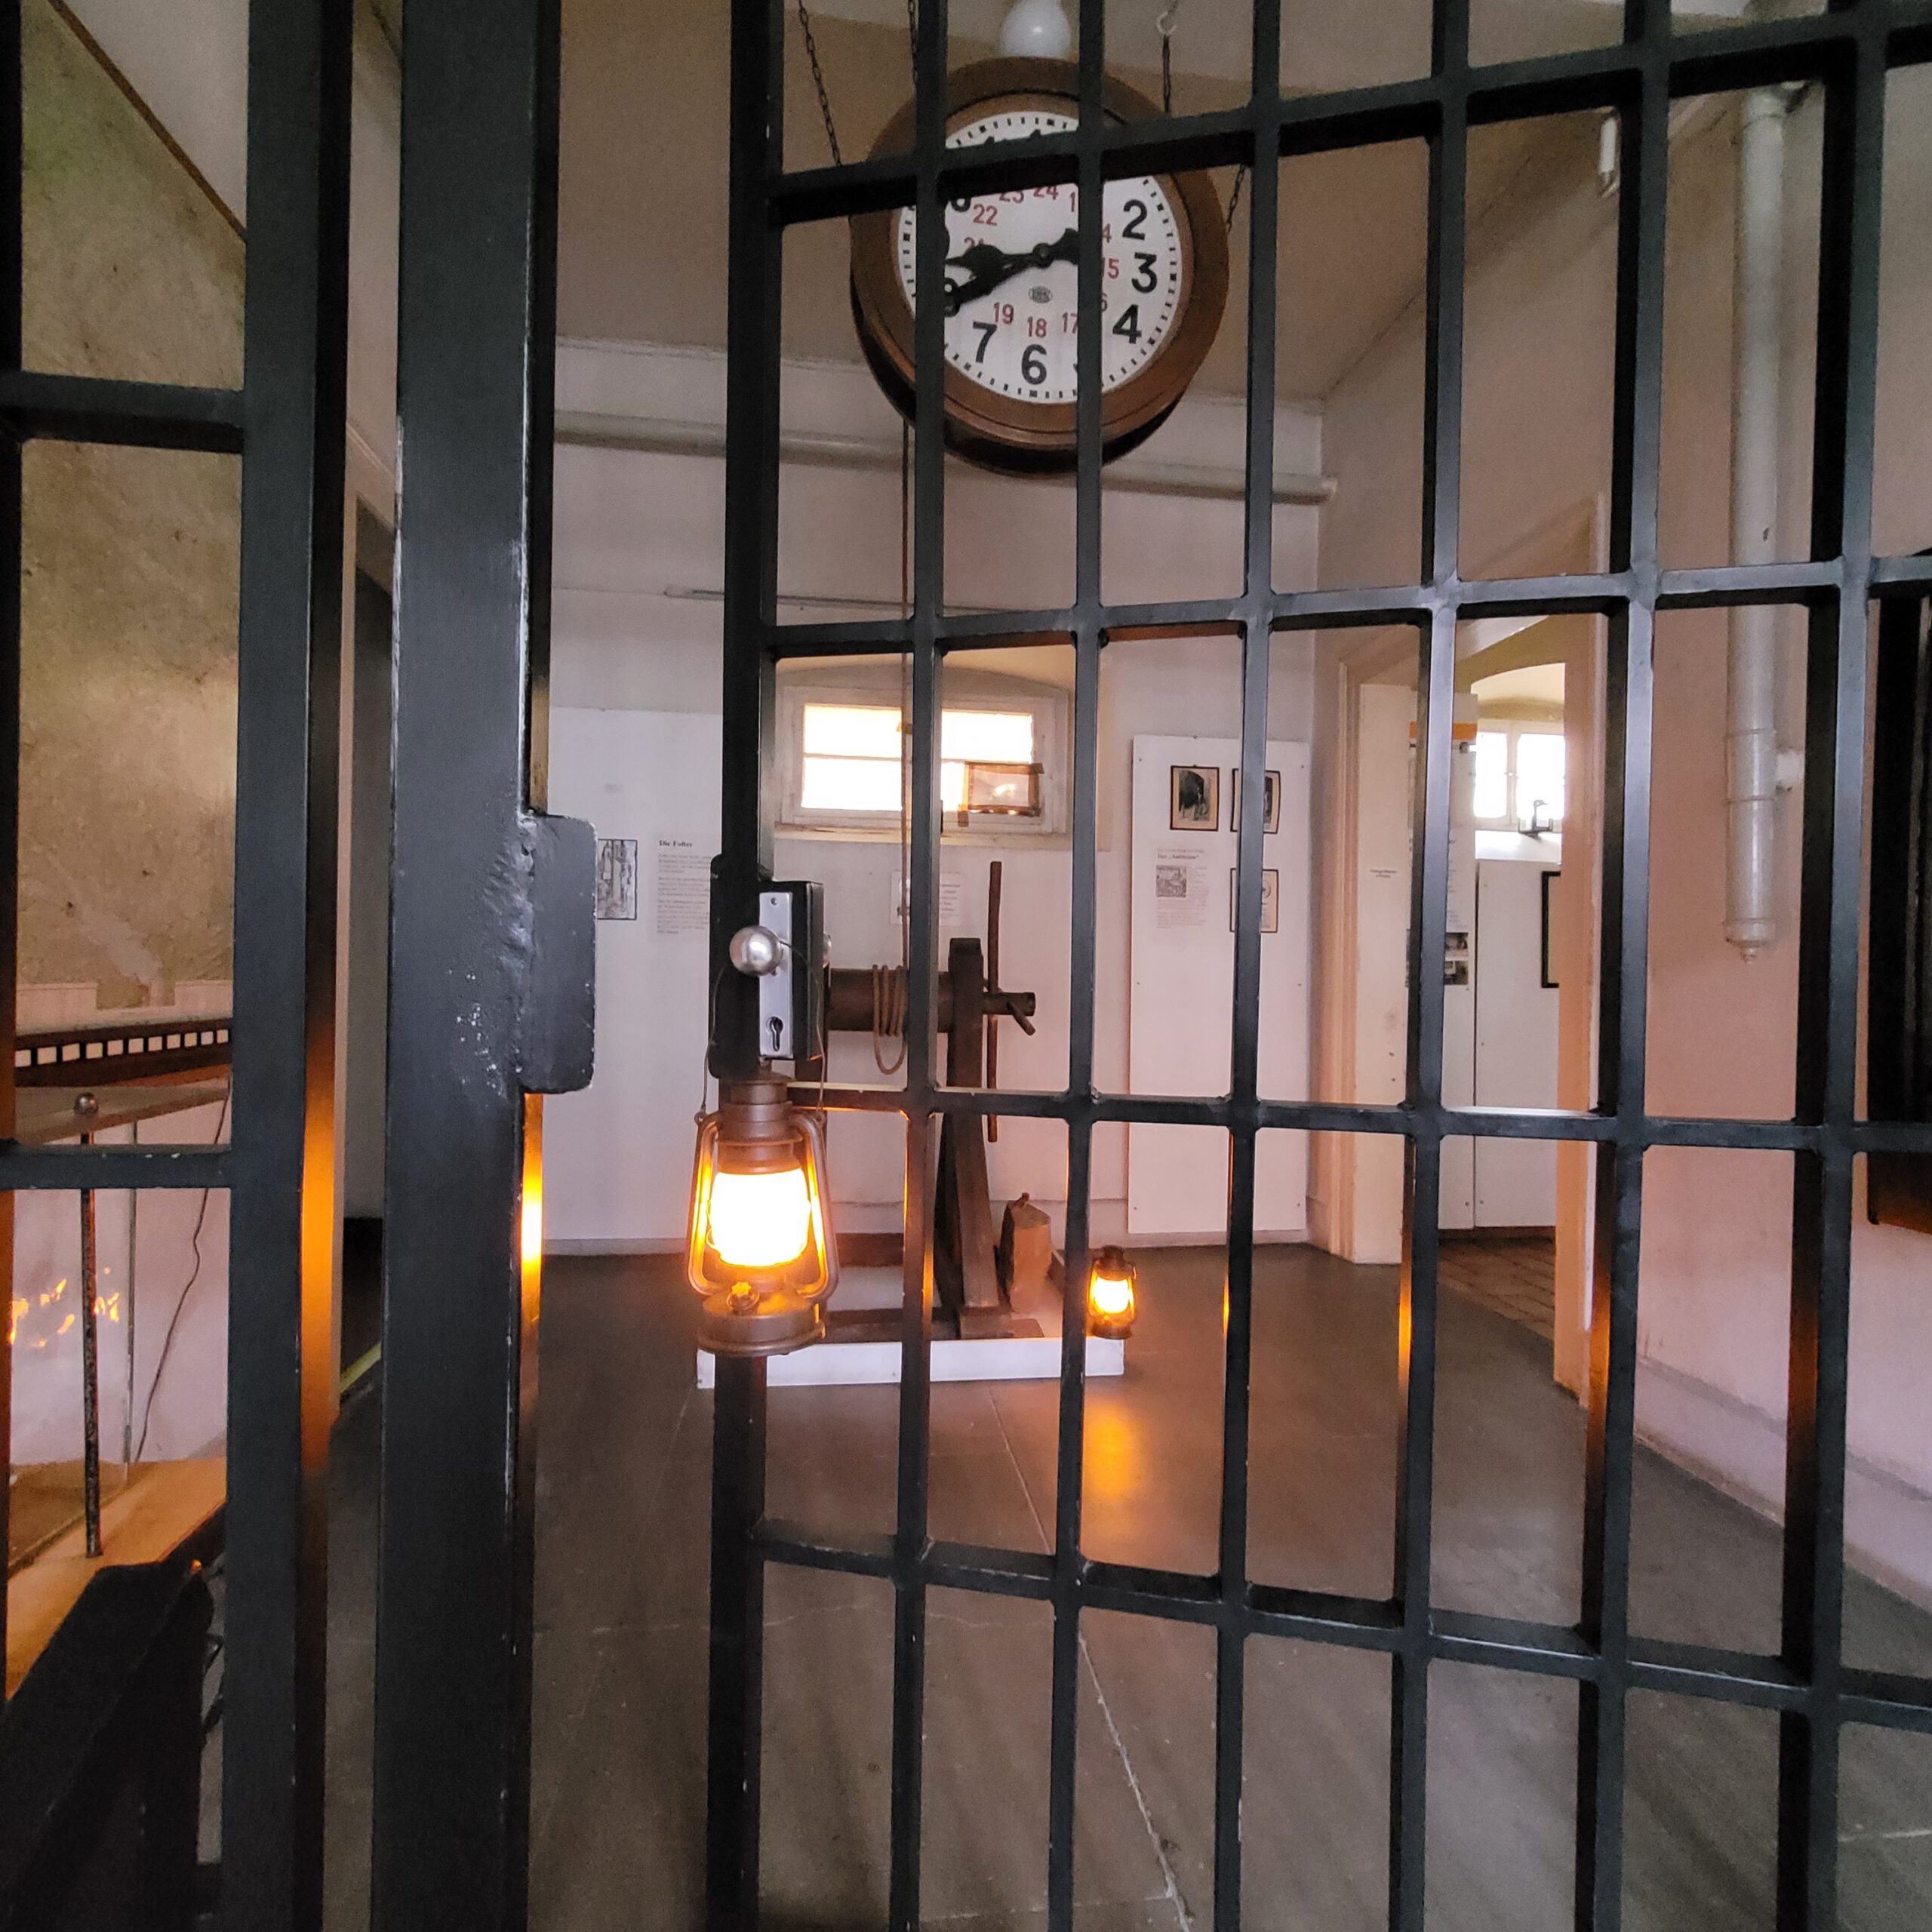 Gezeigt wird das halb geschlossene Gittertor, dass im Eingangsbereich des Strafvollzugsmuseums steht und vom Boden bis zur Decke reicht